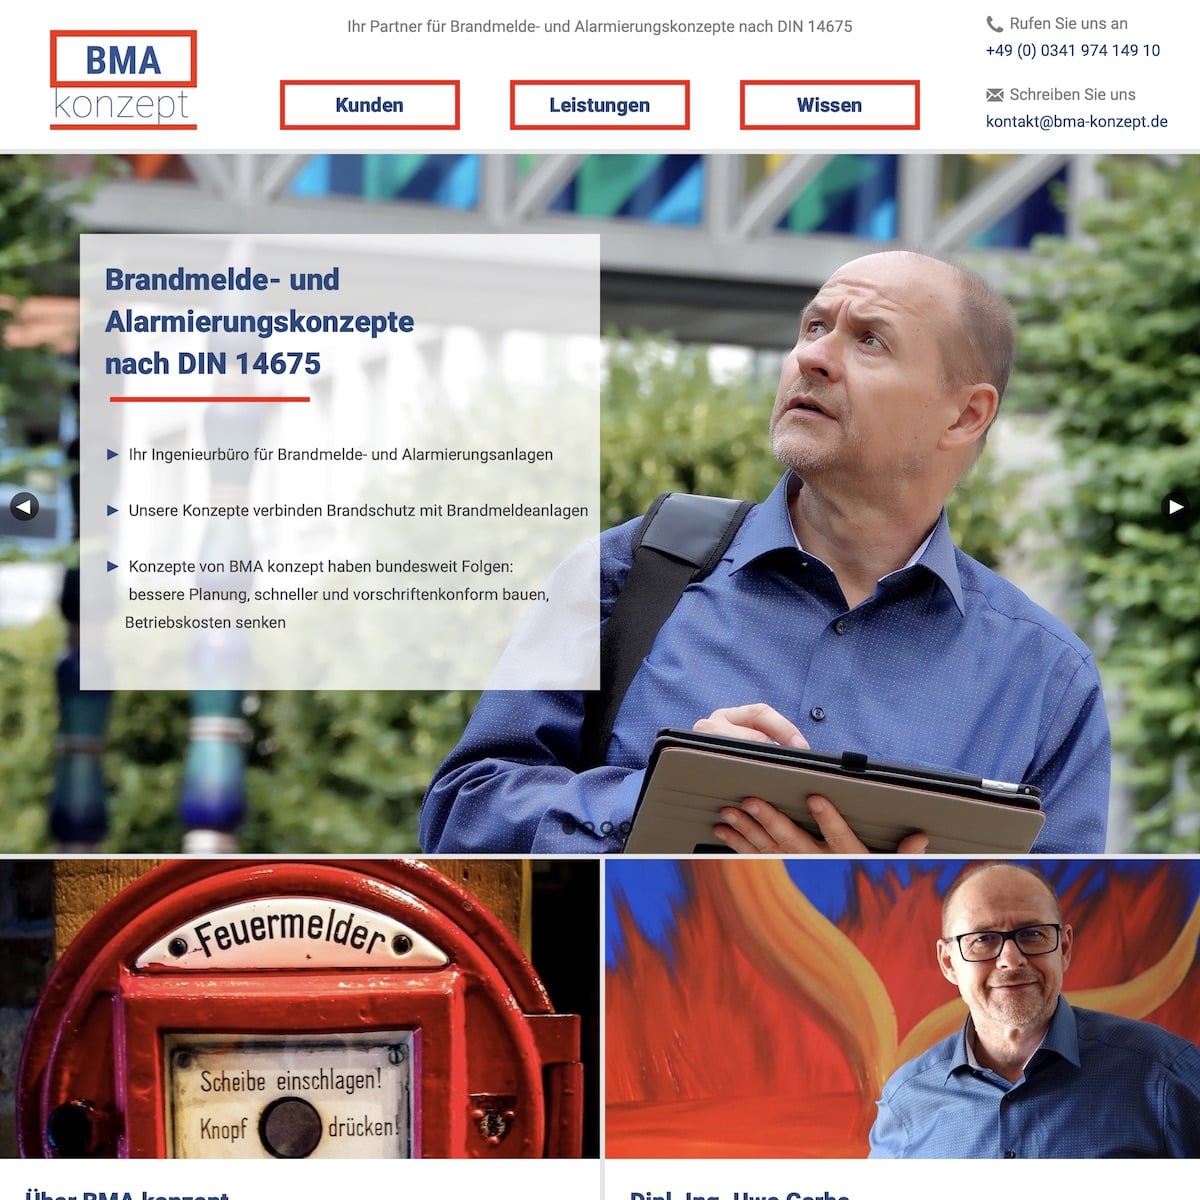 Vorschau Website BMA Konzept aus dem Jahr 2020